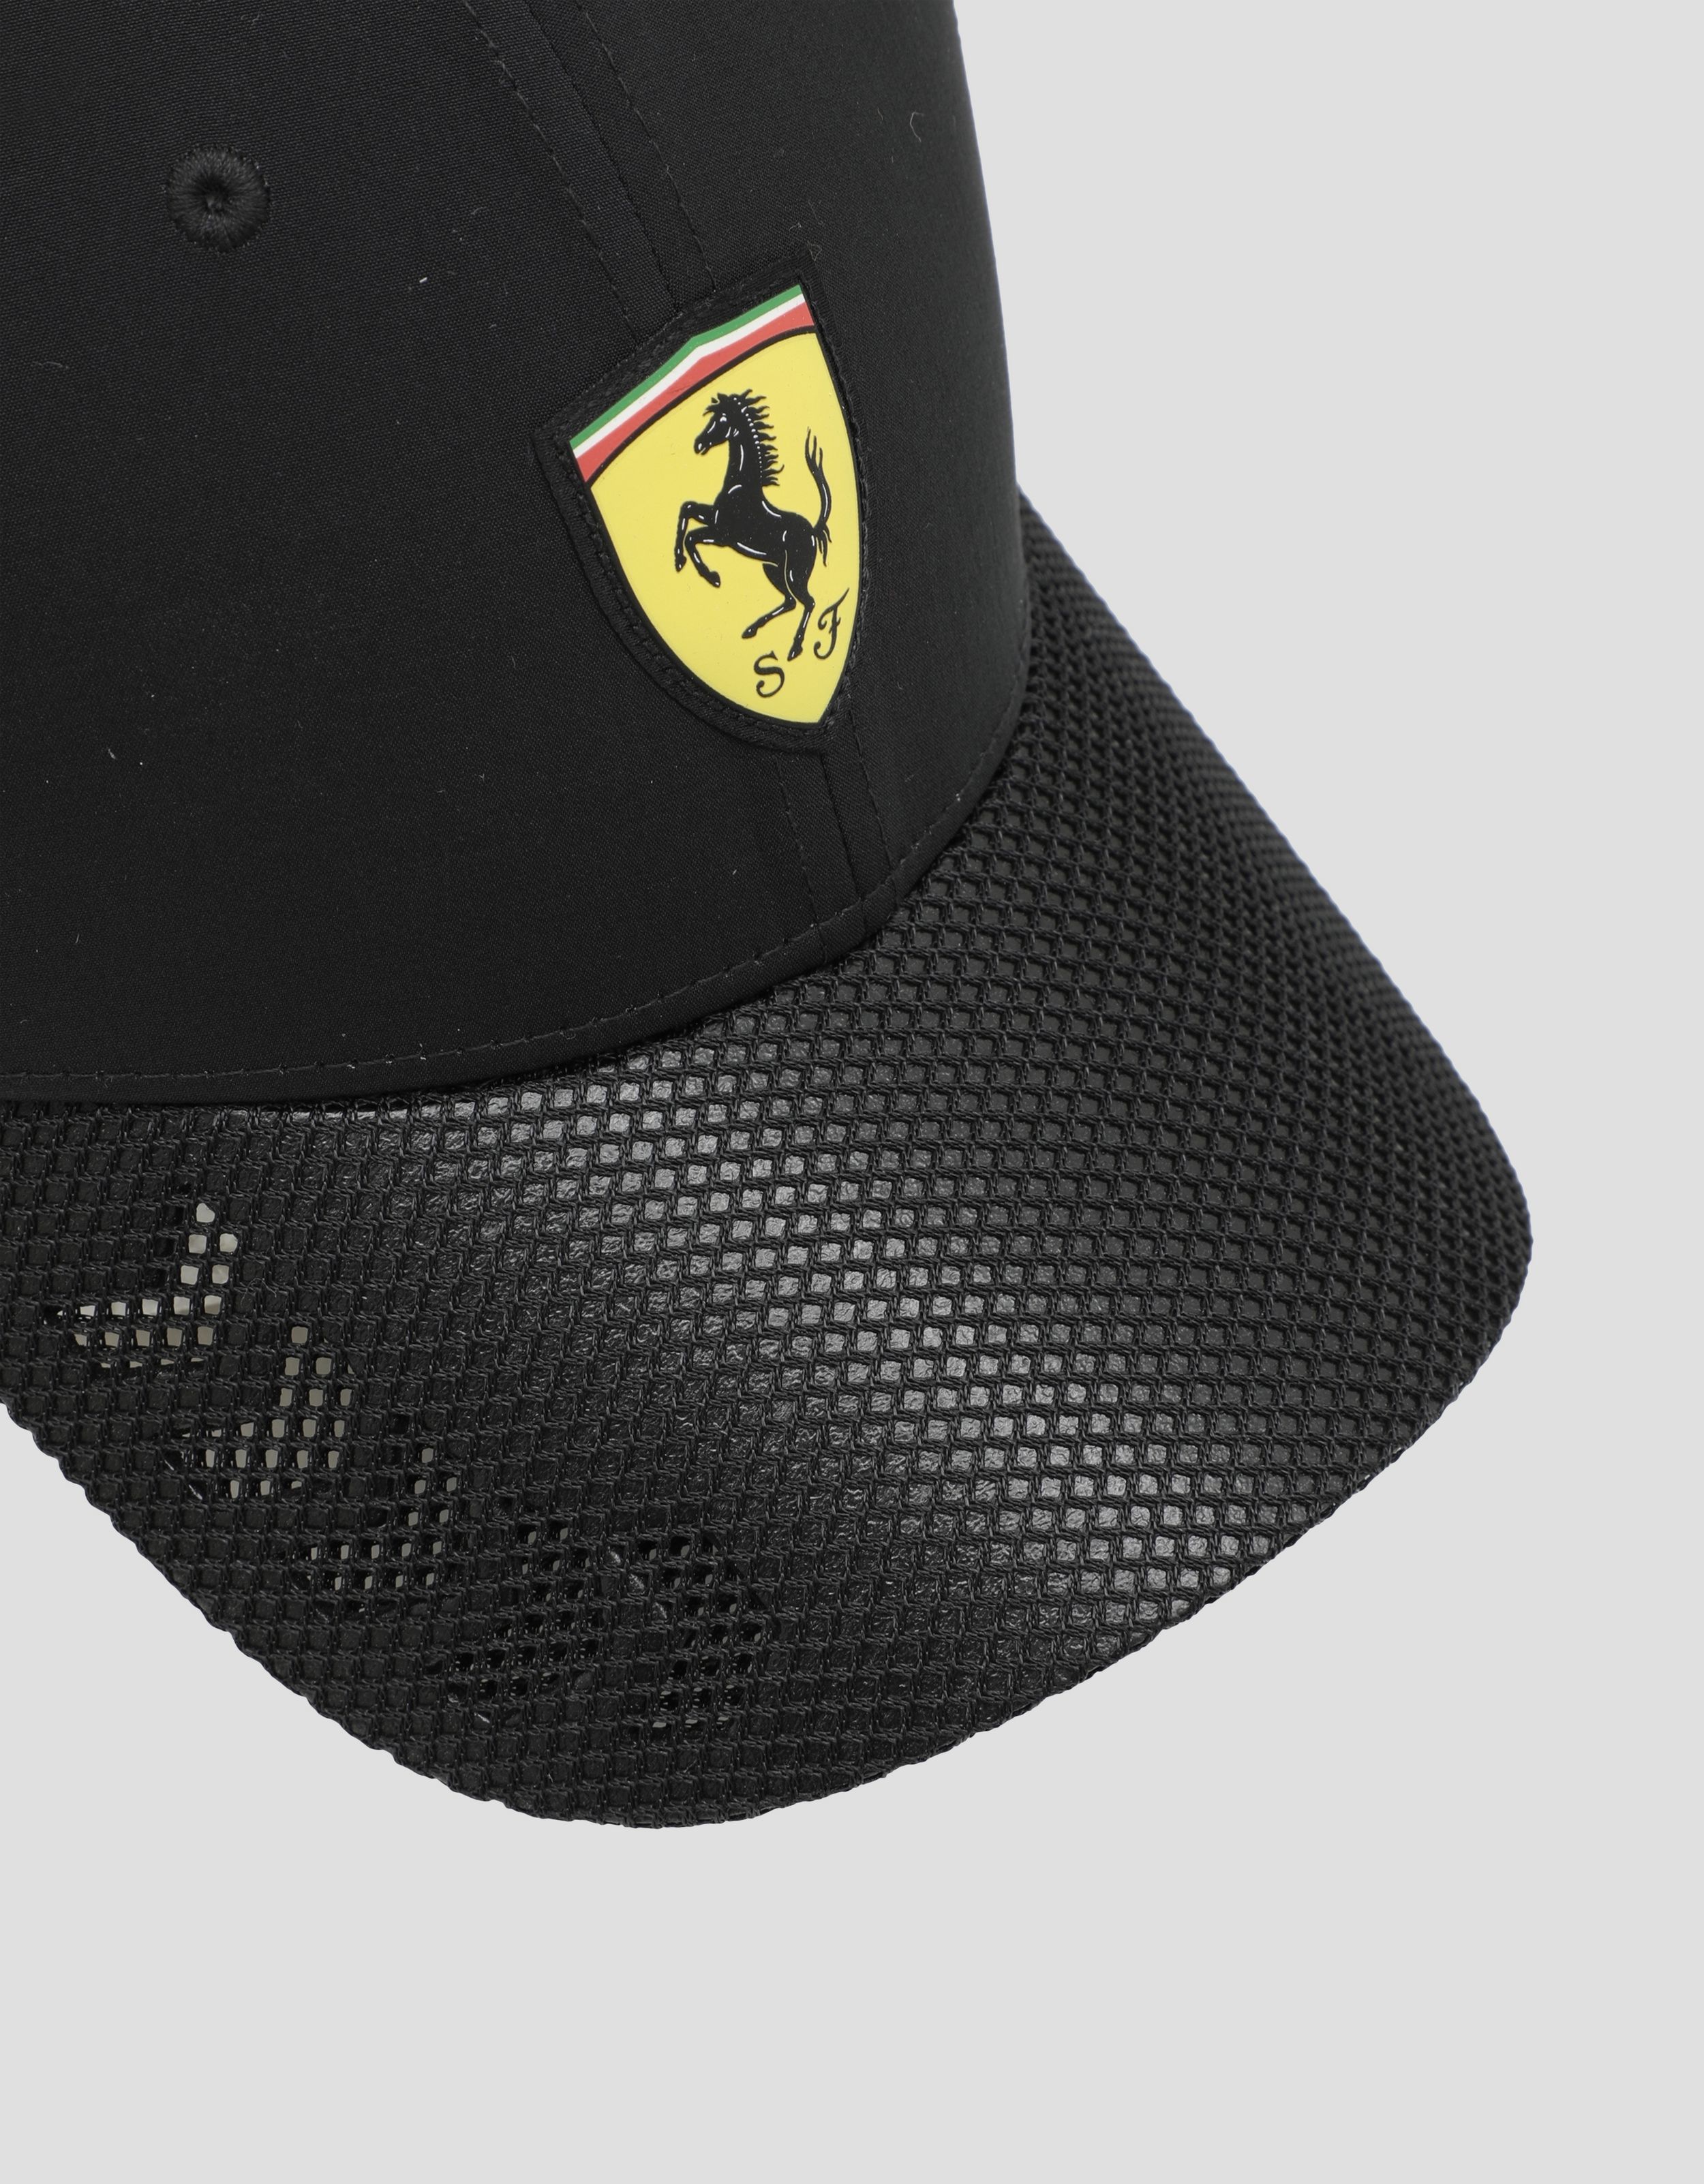 Ferrari Men's hat with perforated visor Man Scuderia Ferrari Official